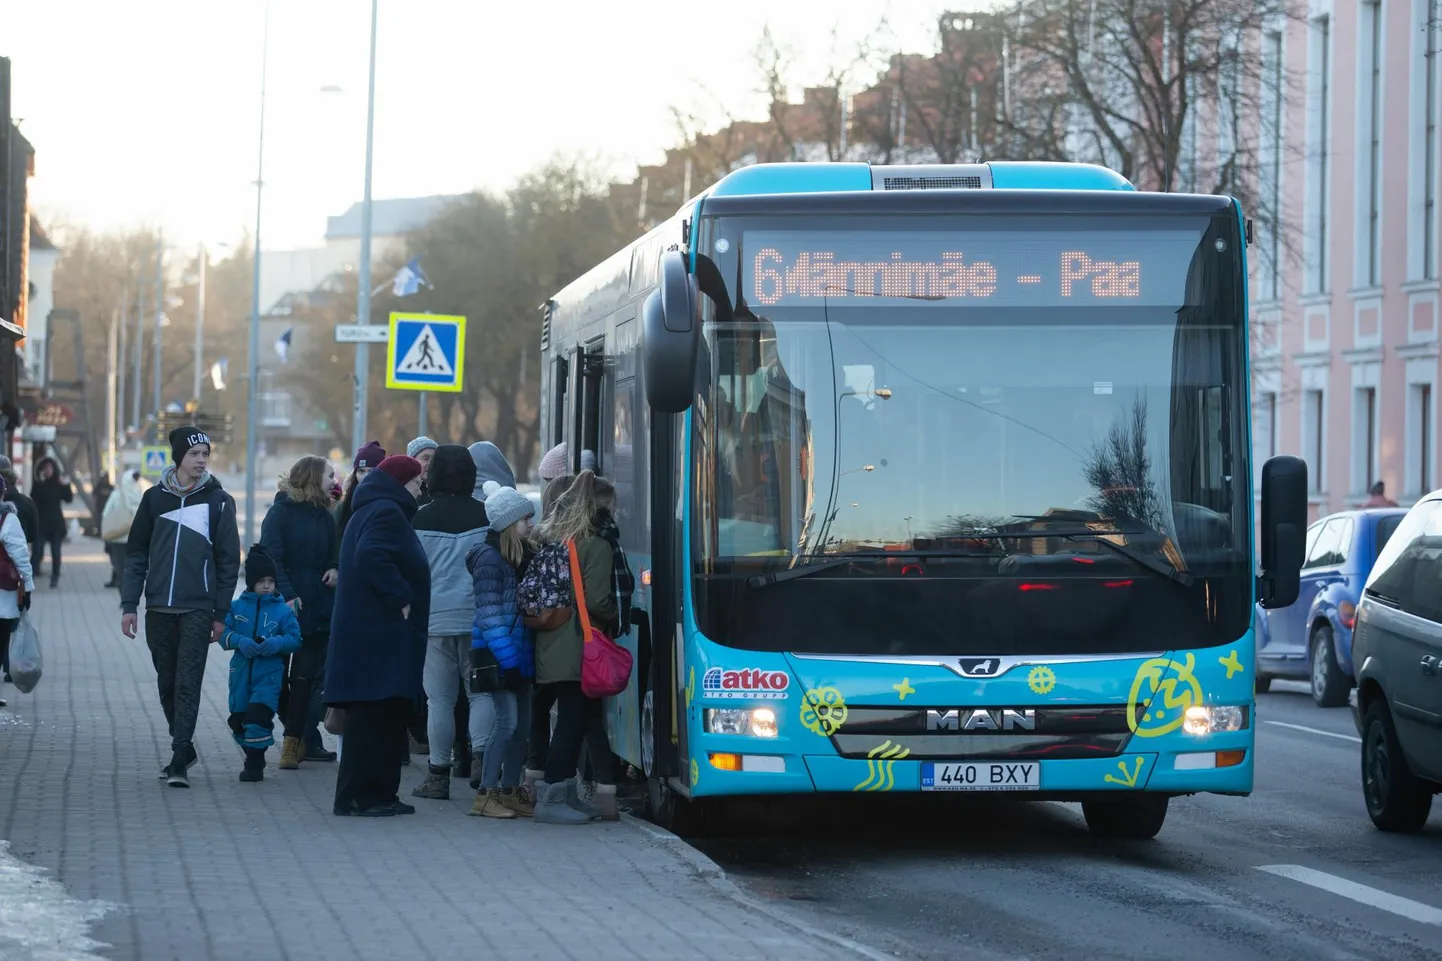 Uus nädala paneb Viljandimaa ühistranspordis neli liini teisiti sõitma. Muudetakse busside number 2, 6, 15C ja 36C sõiduplaani.